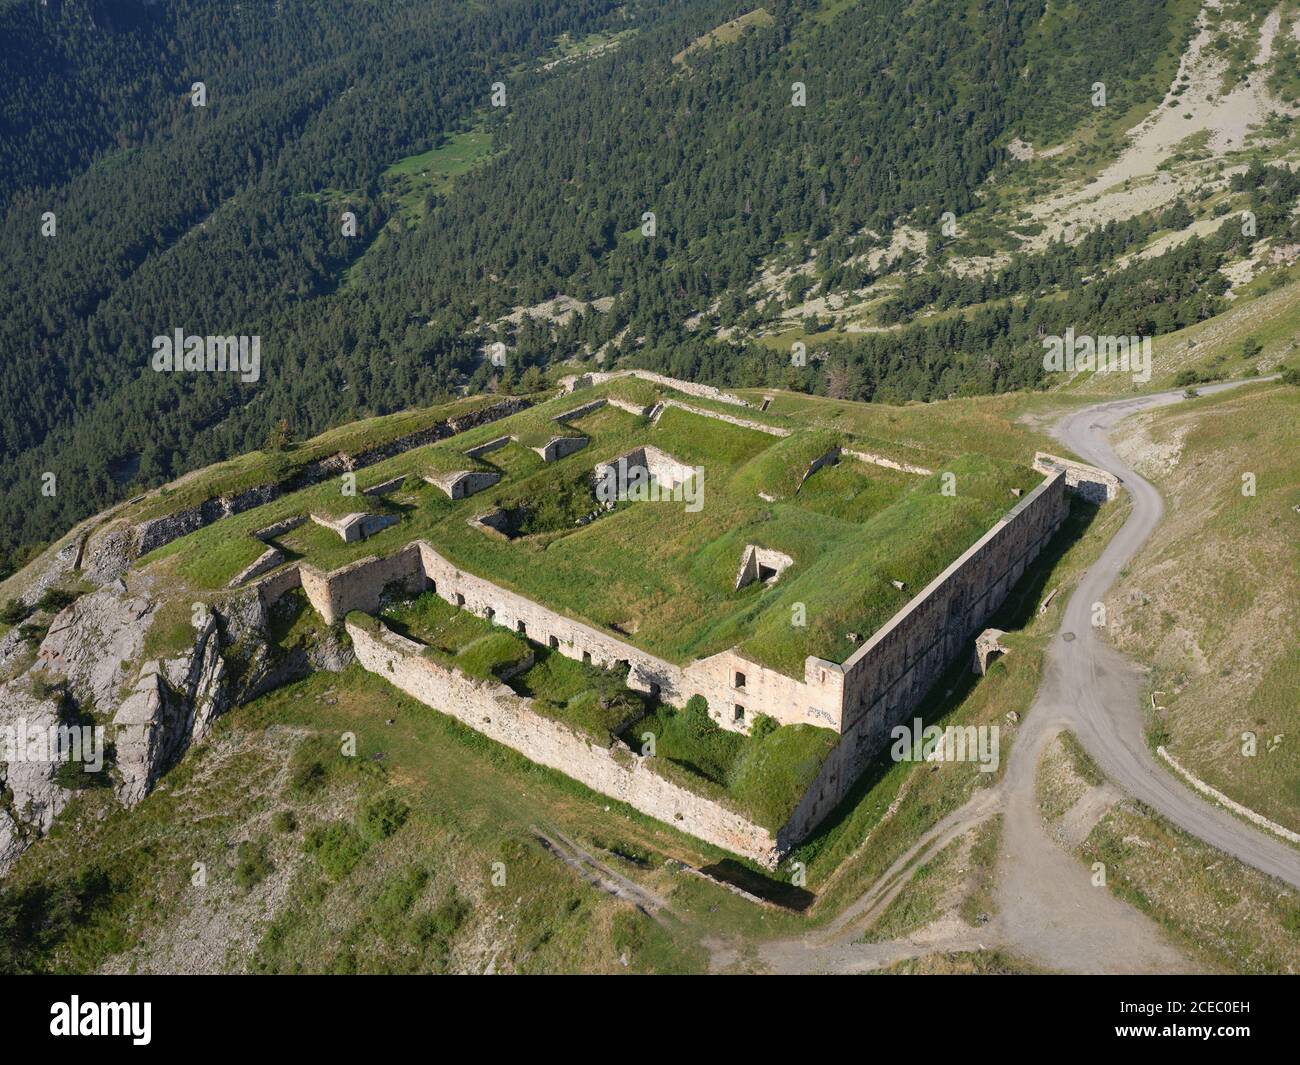 LUFTAUFNAHME. Fort de la Marguerie, eine alte militärische Festung in der Nähe des Col de Tende. Tende, Alpes-Maritimes, Frankreich. Stockfoto